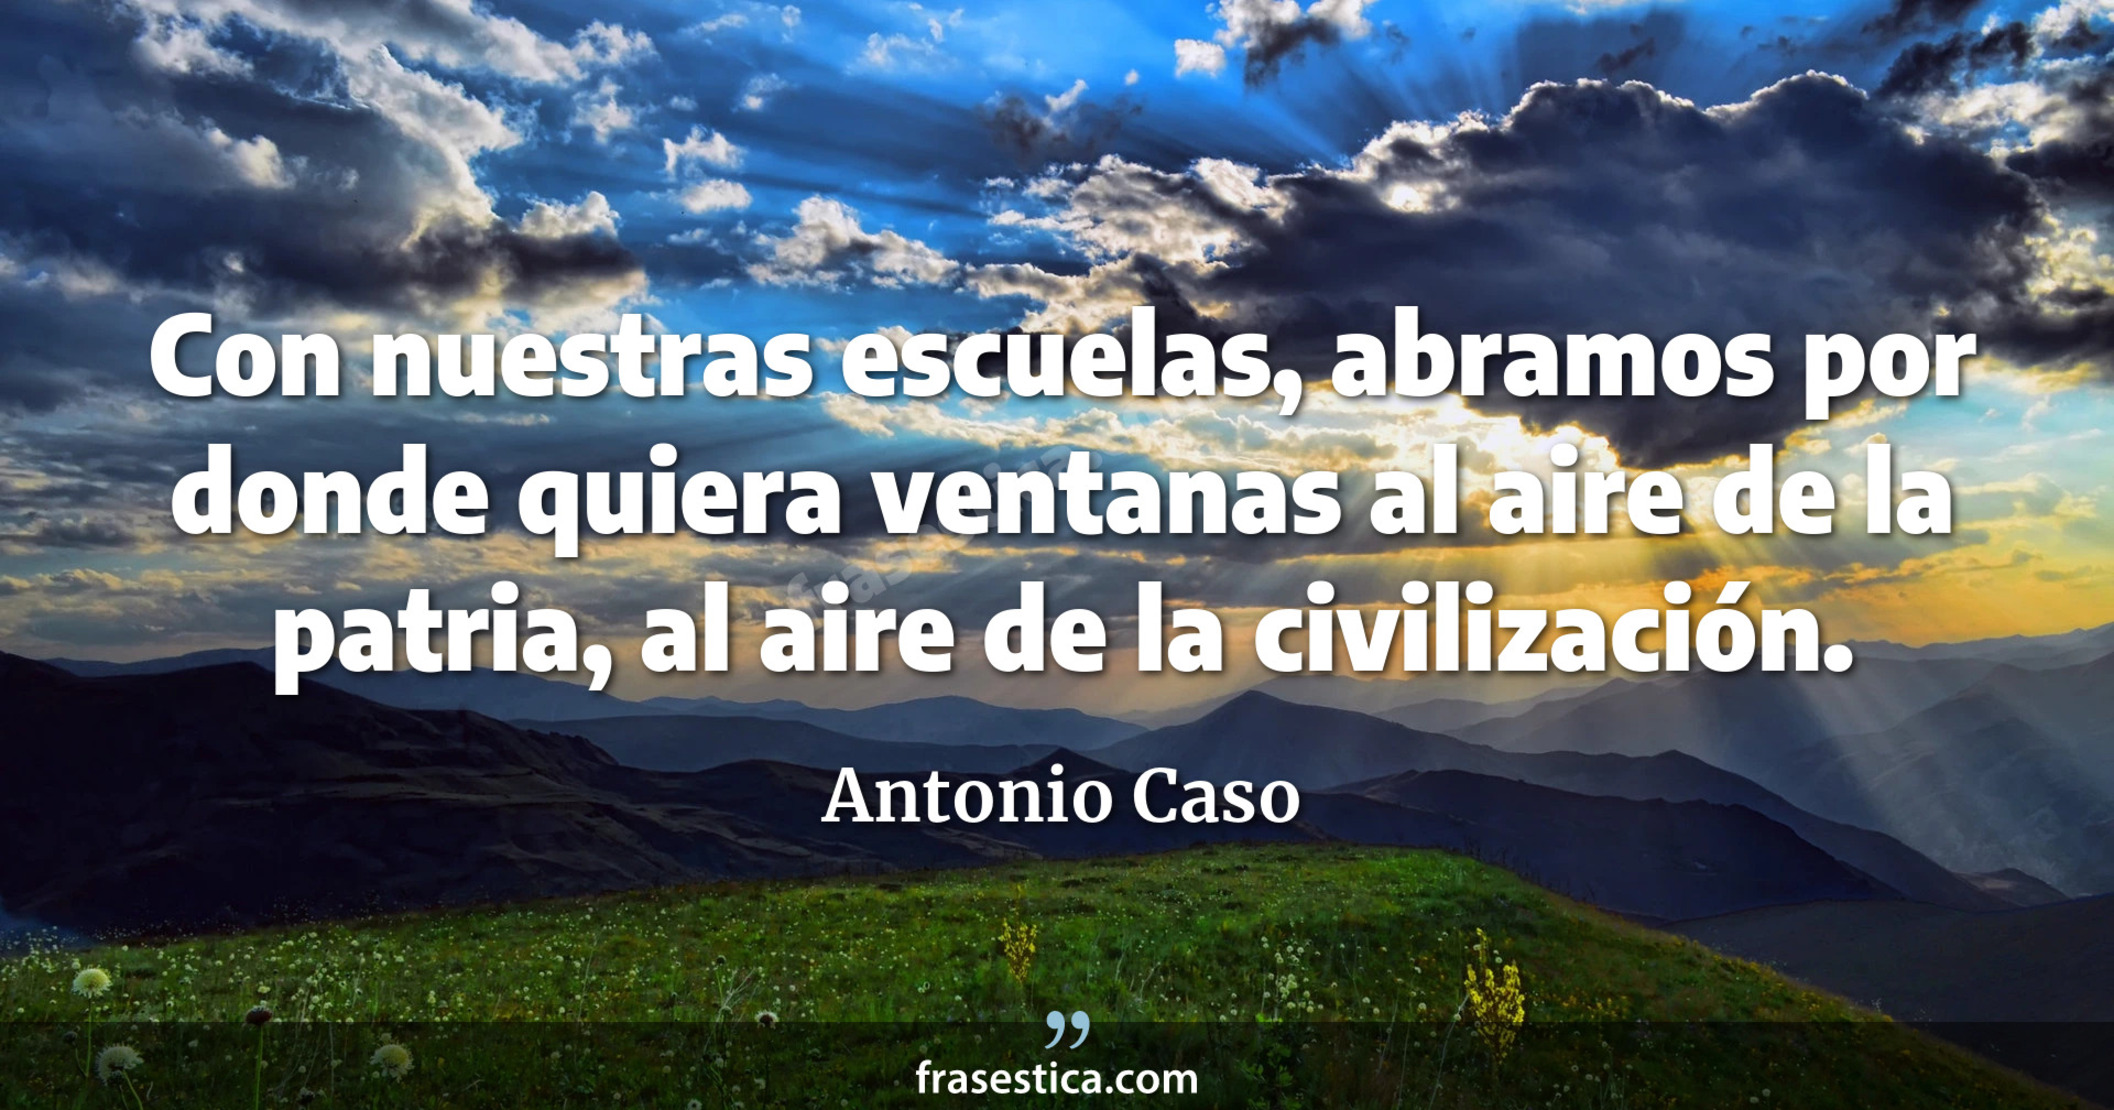 Con nuestras escuelas, abramos por donde quiera ventanas al aire de la patria, al aire de la civilización. - Antonio Caso